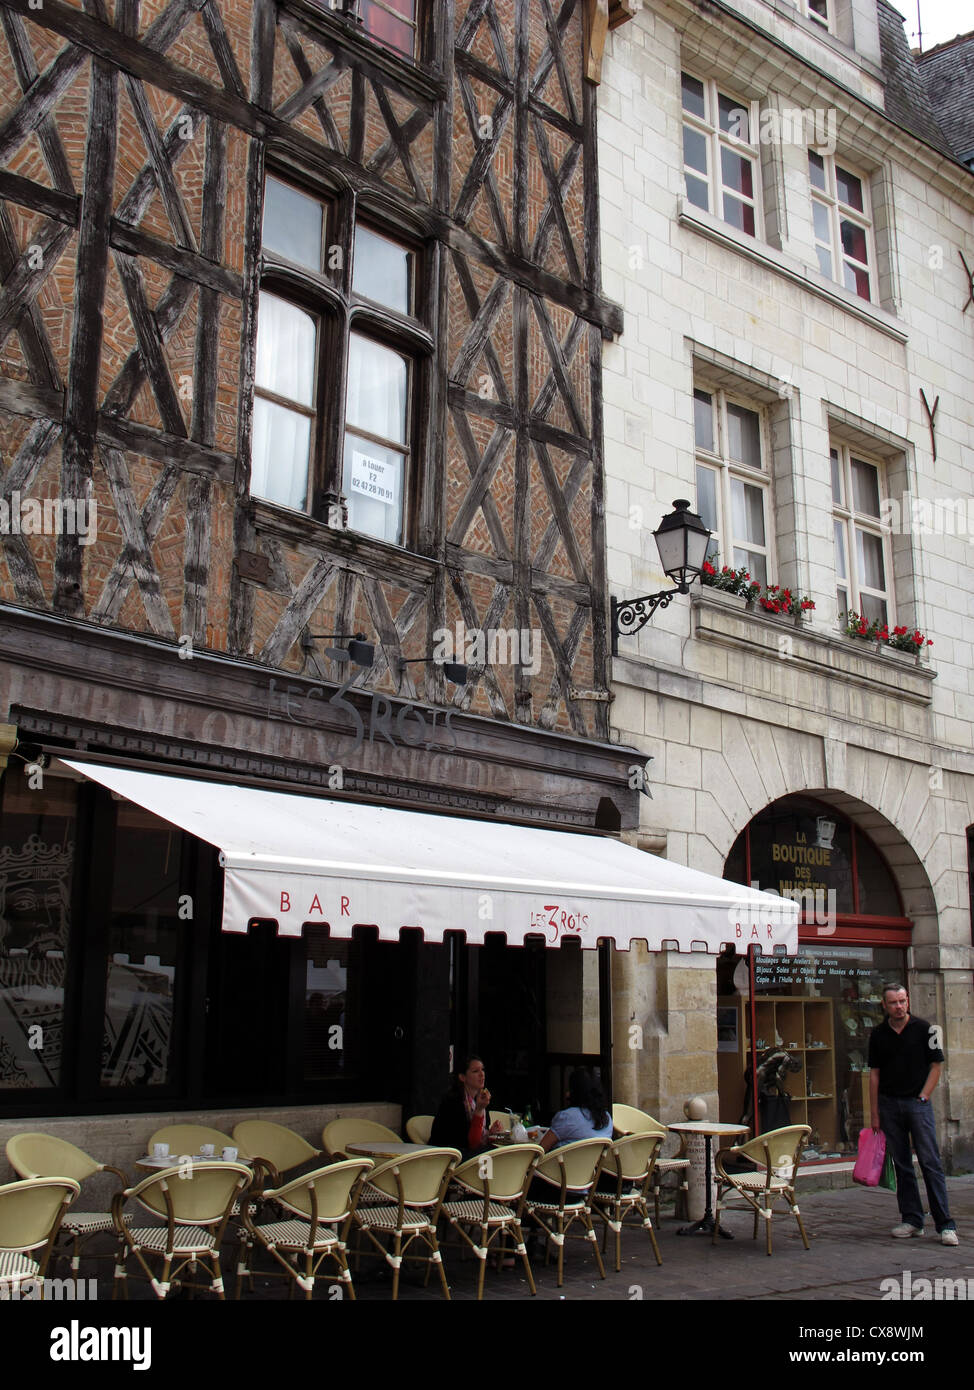 Les Trois Rois bar,Place Plumereau in old Tours,Indre-et-Loire, France Stock Photo